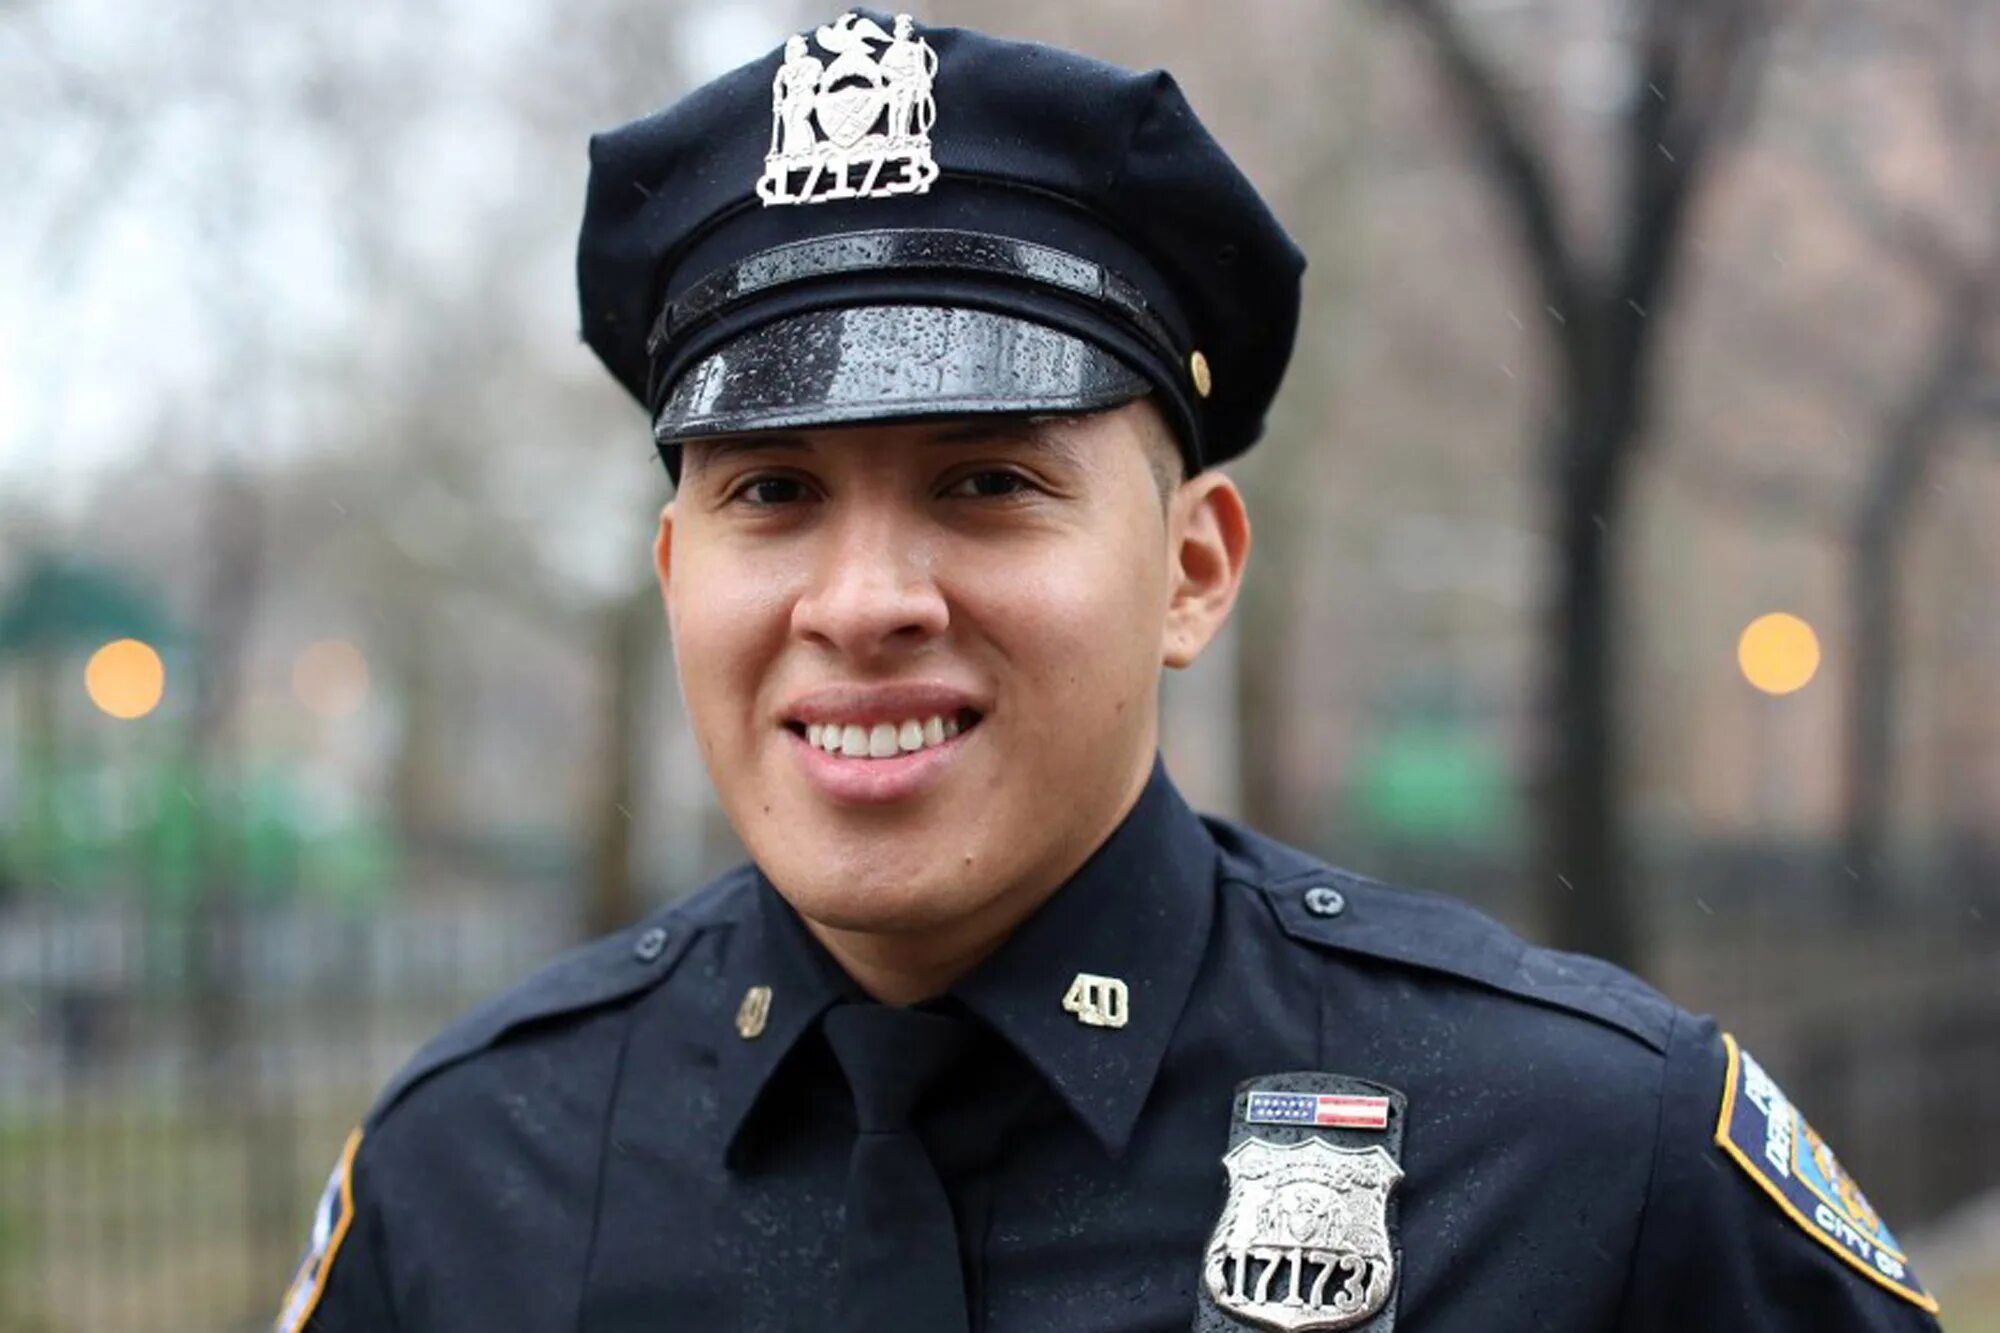 Полицейский офицер. Фото офицера полиции. NYPD Officer. Фотография полицейского в реальной жизни.